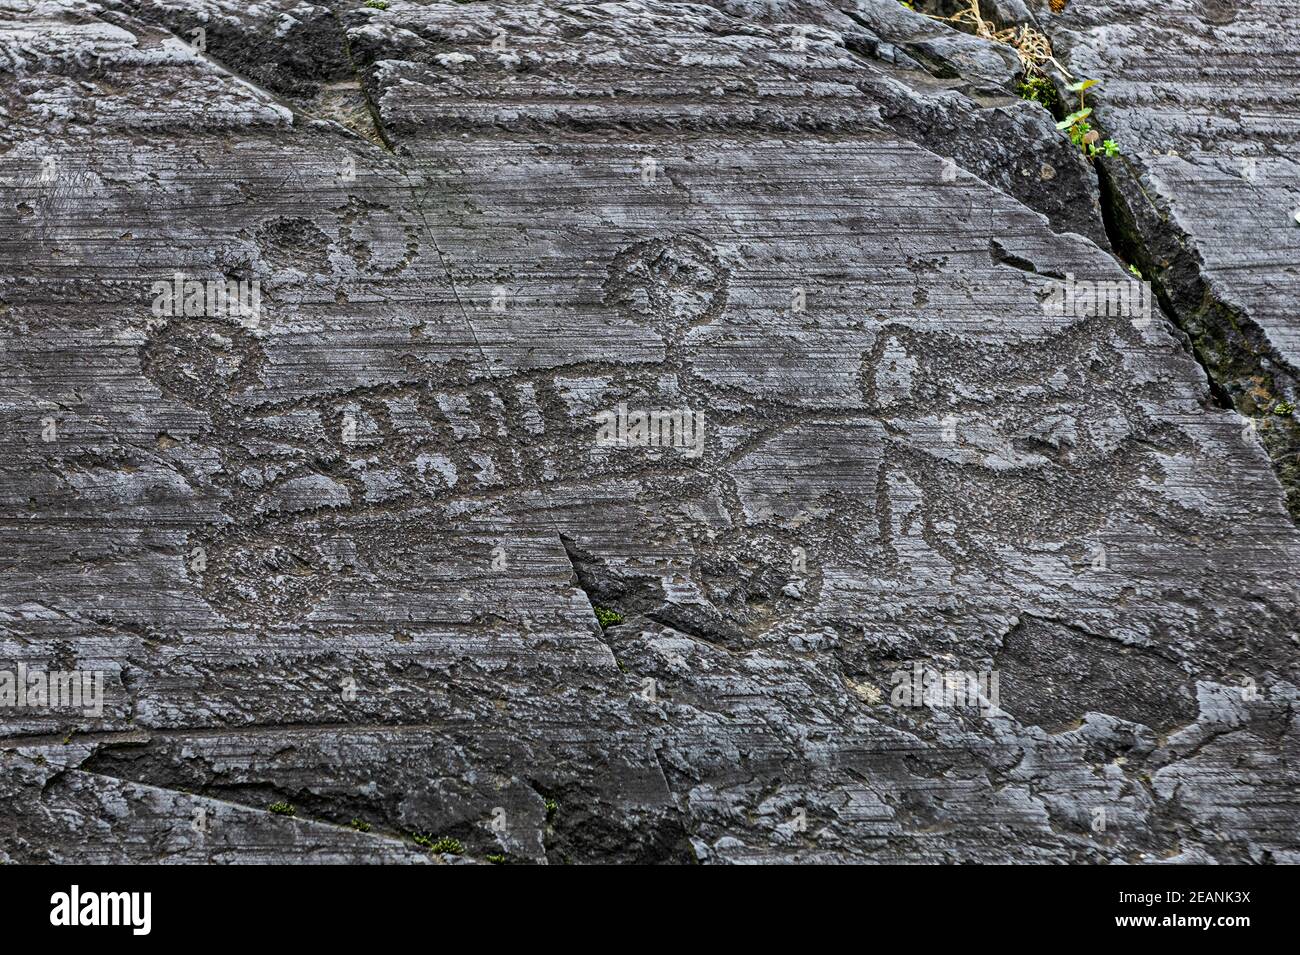 Incisioni rupestri, Parco Nazionale di Naquane, Patrimonio dell'Umanità dell'UNESCO, Valcamonica, Italia, Europa Foto Stock